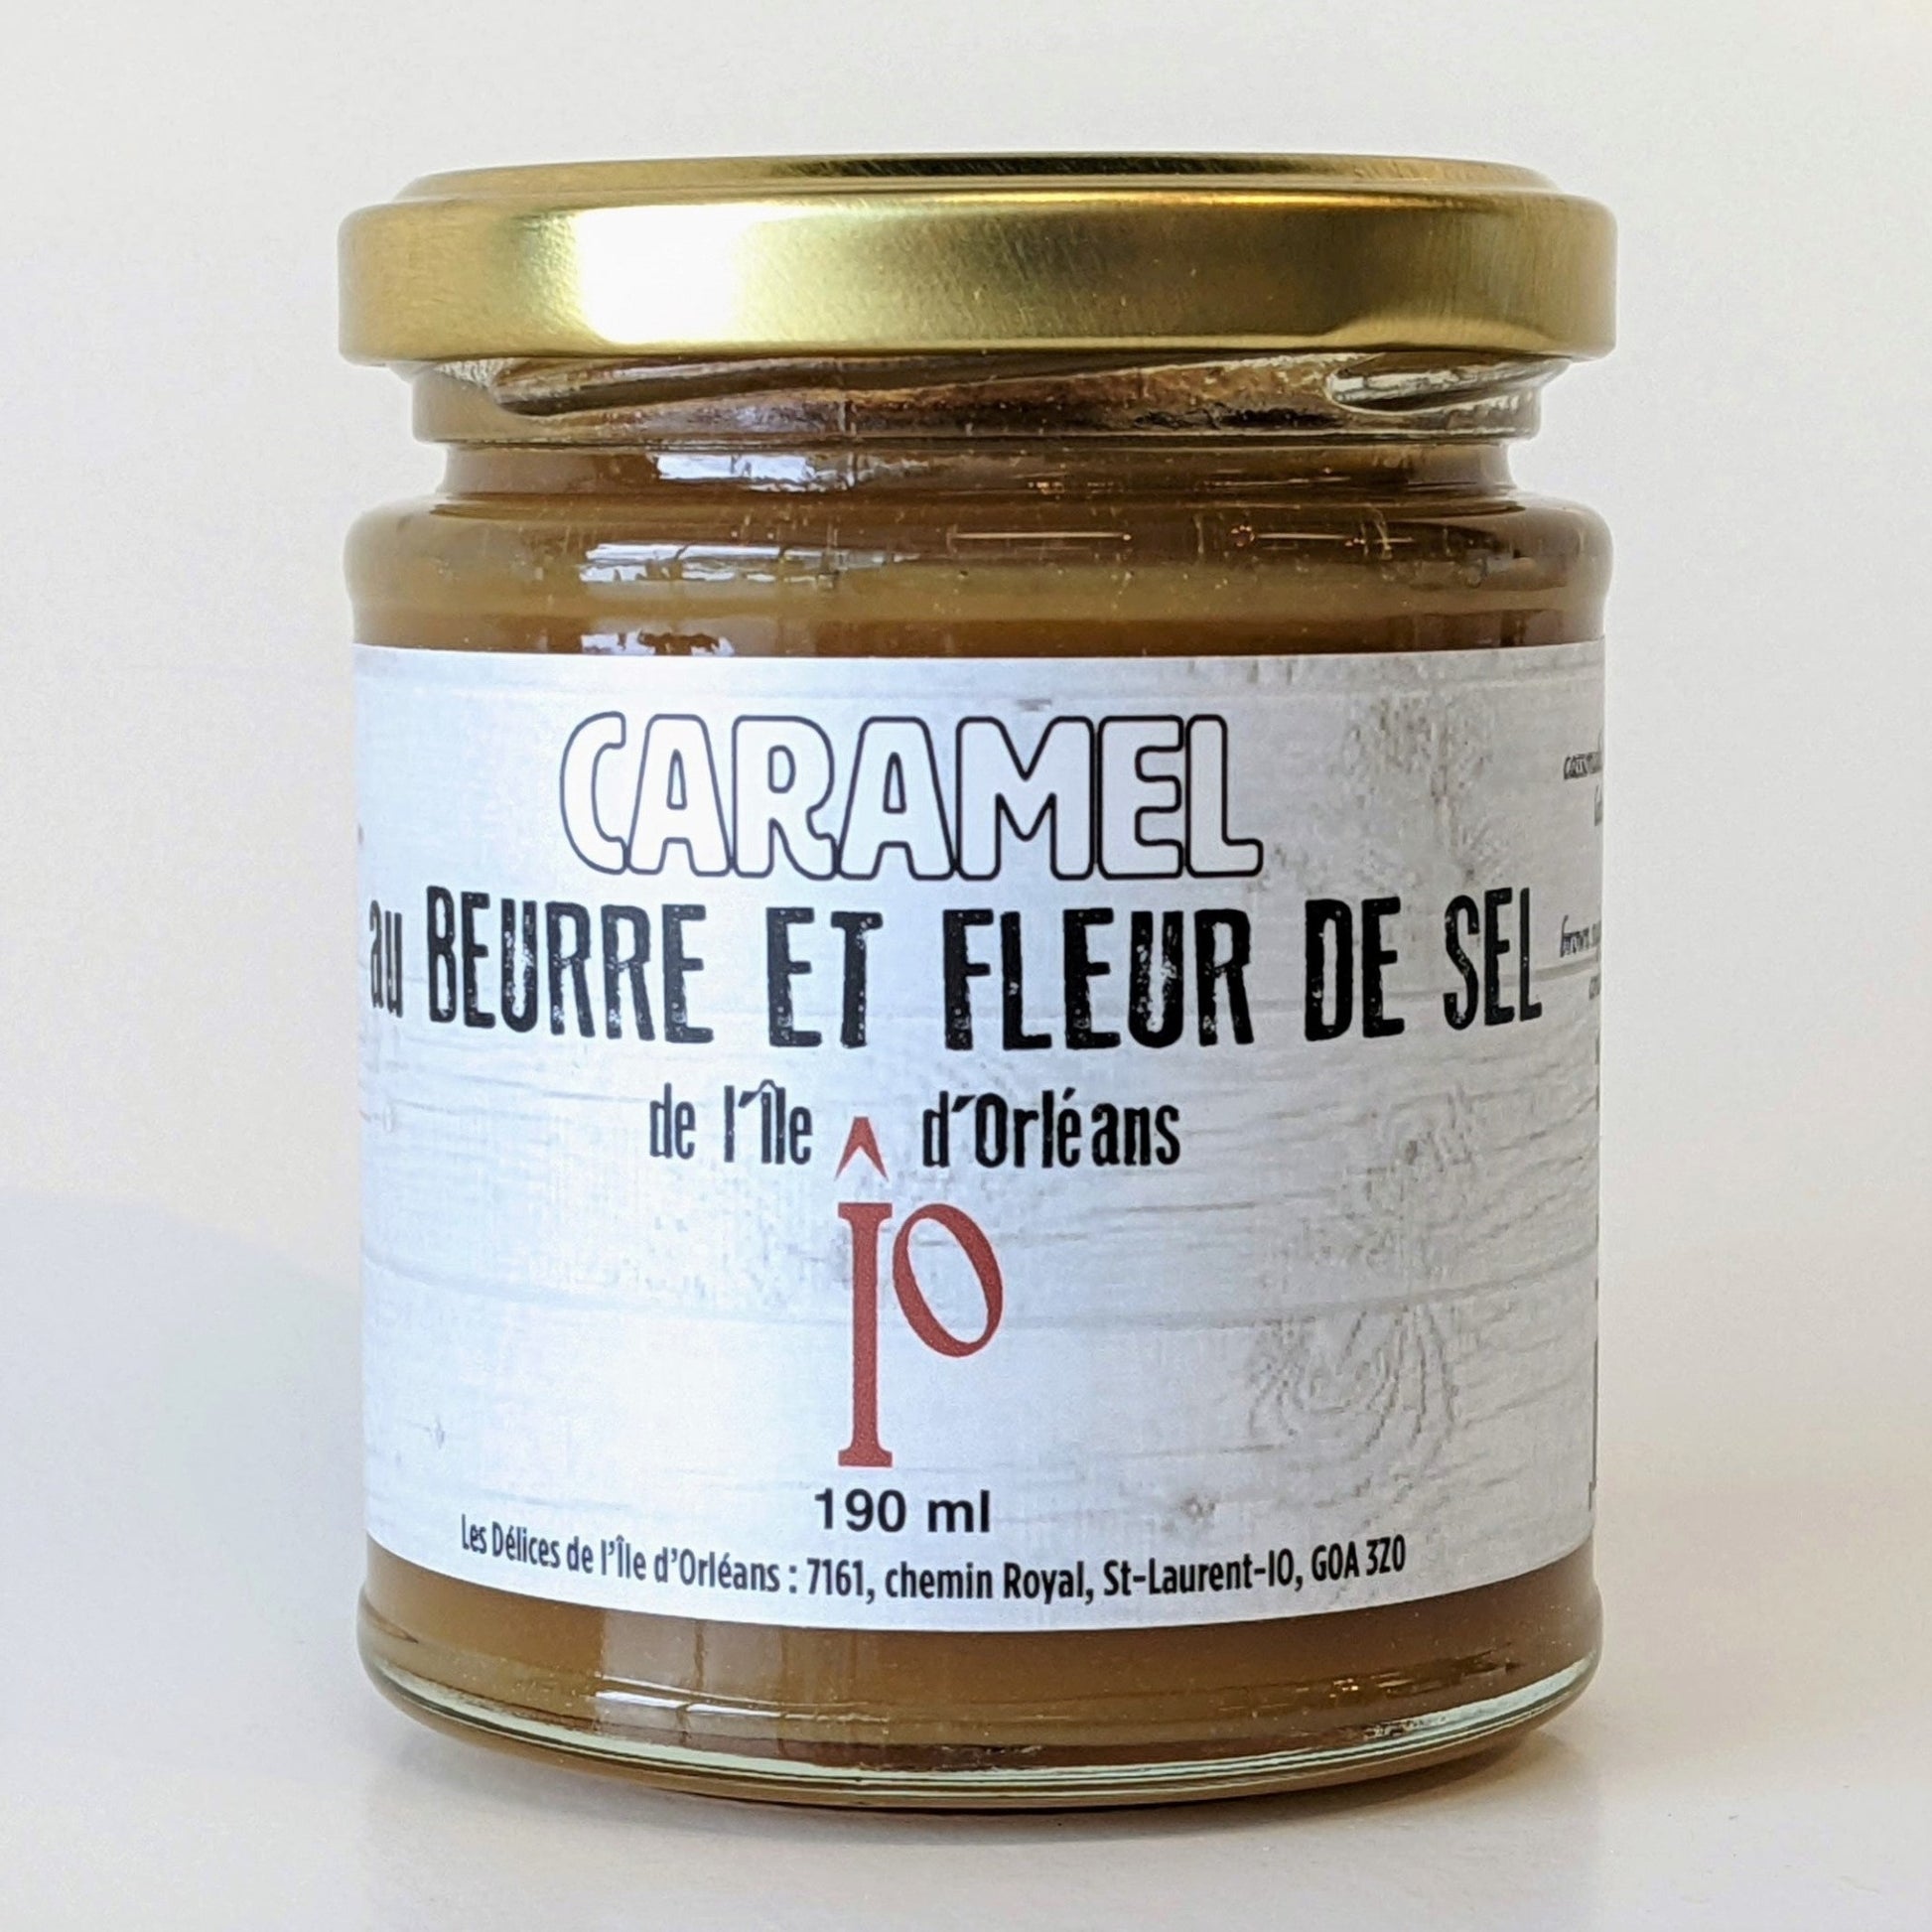 Caramel au beurre et fleur de sel de l'Île d'Orléans